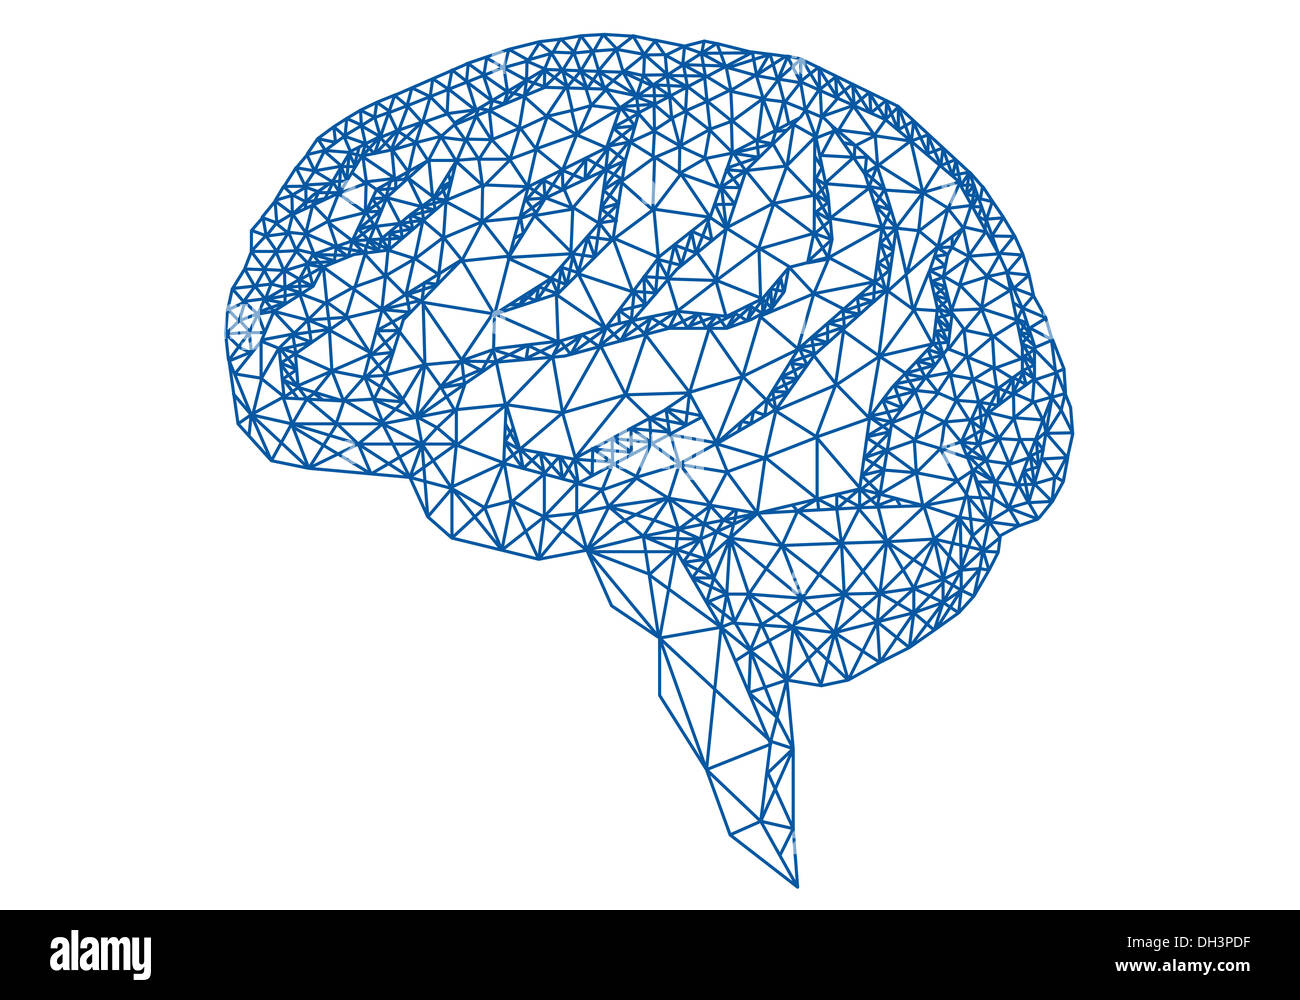 Abstract blue cervello umano con mesh geometriche pattern, illustrazione vettoriale Foto Stock